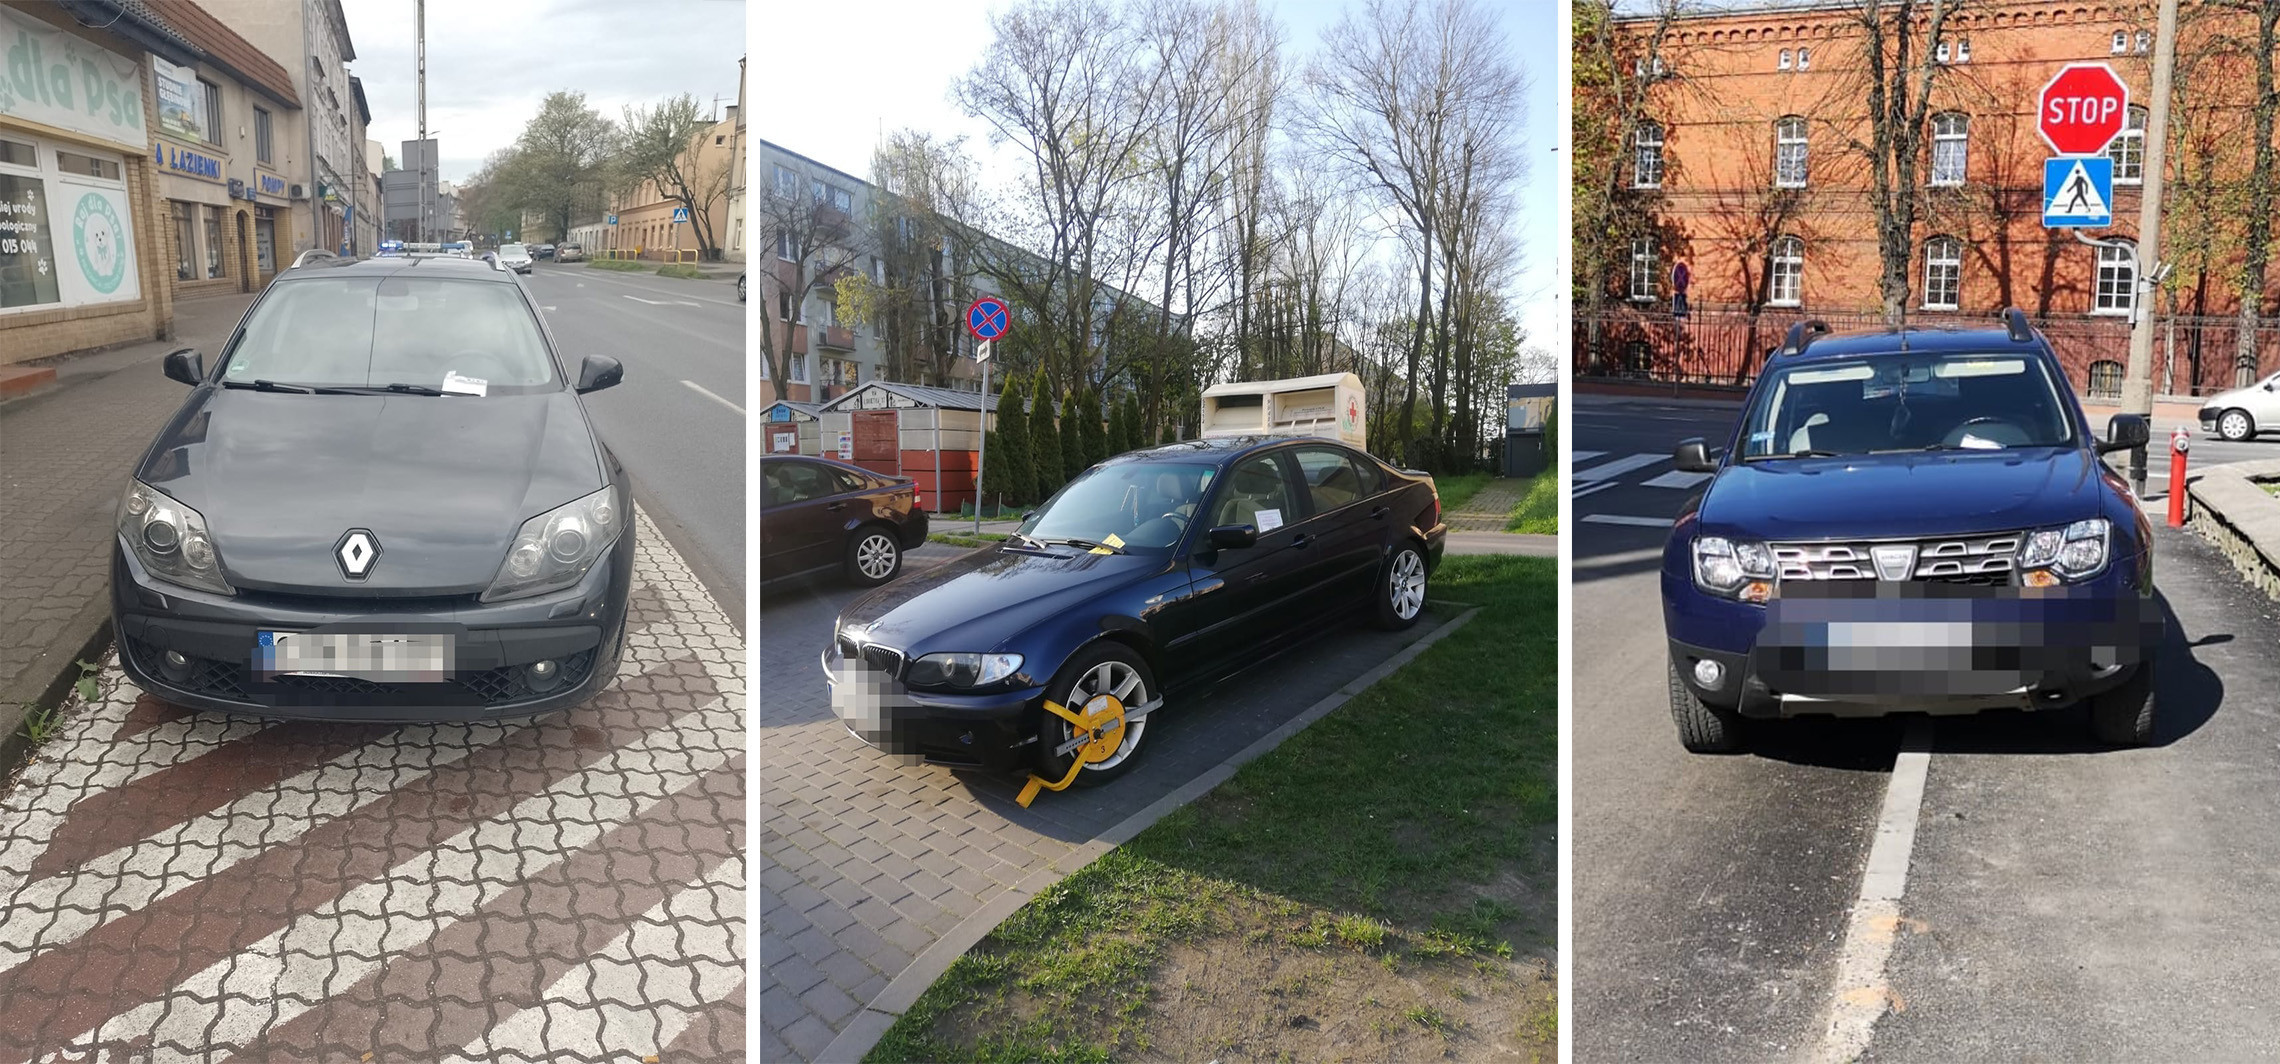 Inowrocław - Straż miejska publikuje zdjęcia samochodów zaparkowanych tam, gdzie nie powinny